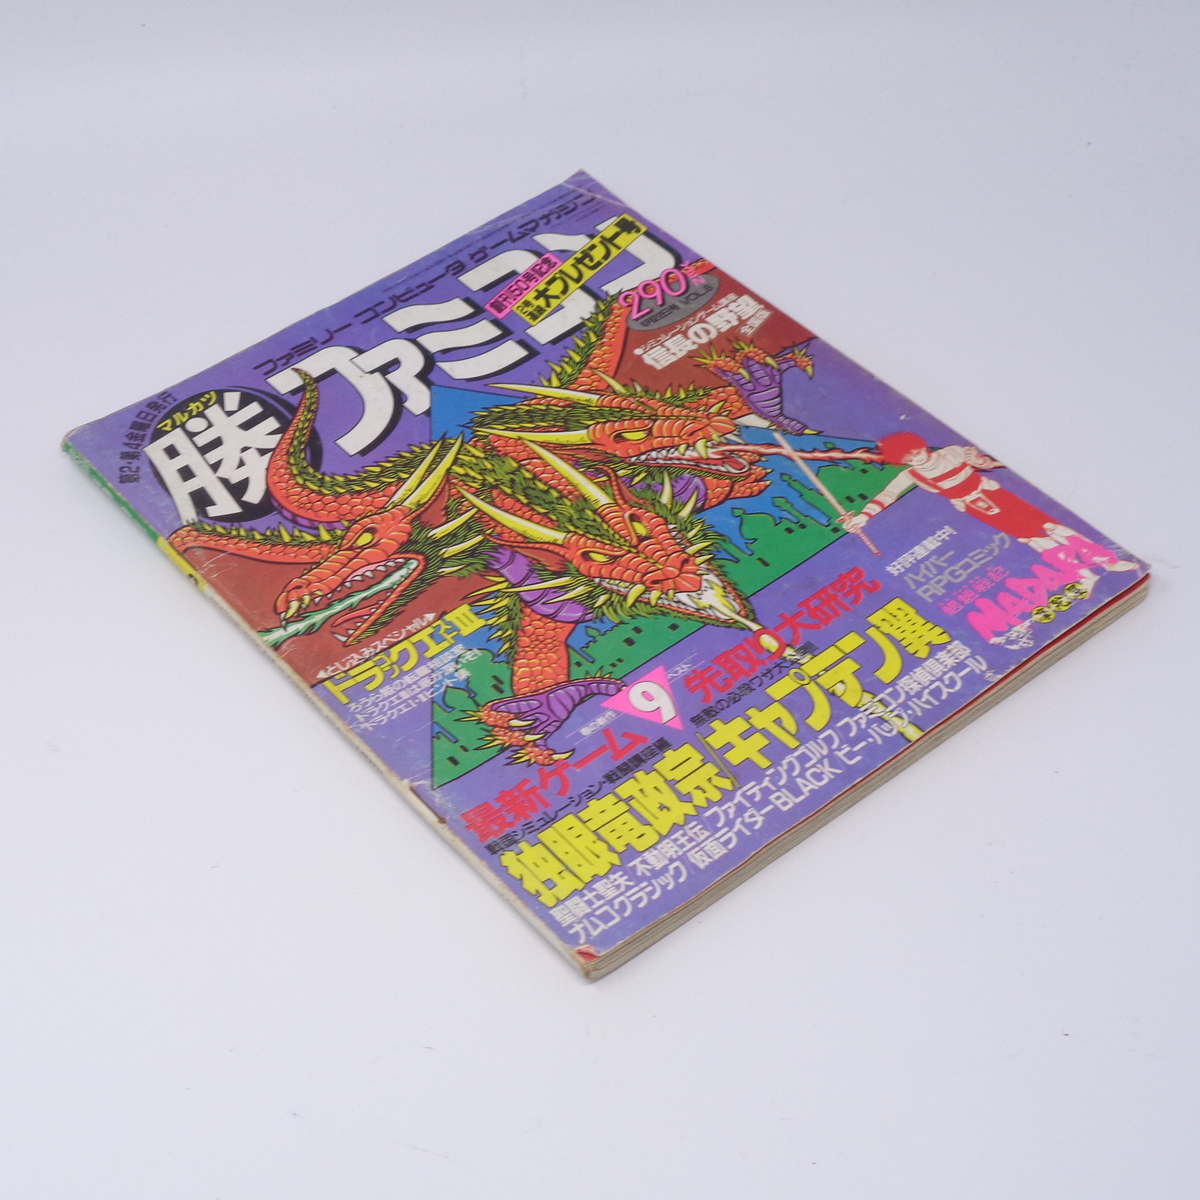 マル勝 マルカツファミコン 1988年4月22日号VOL.8/ドラゴンクエスト3/キャプテン翼/ファミコン探偵倶楽部/ゲーム雑誌[Free Shipping]